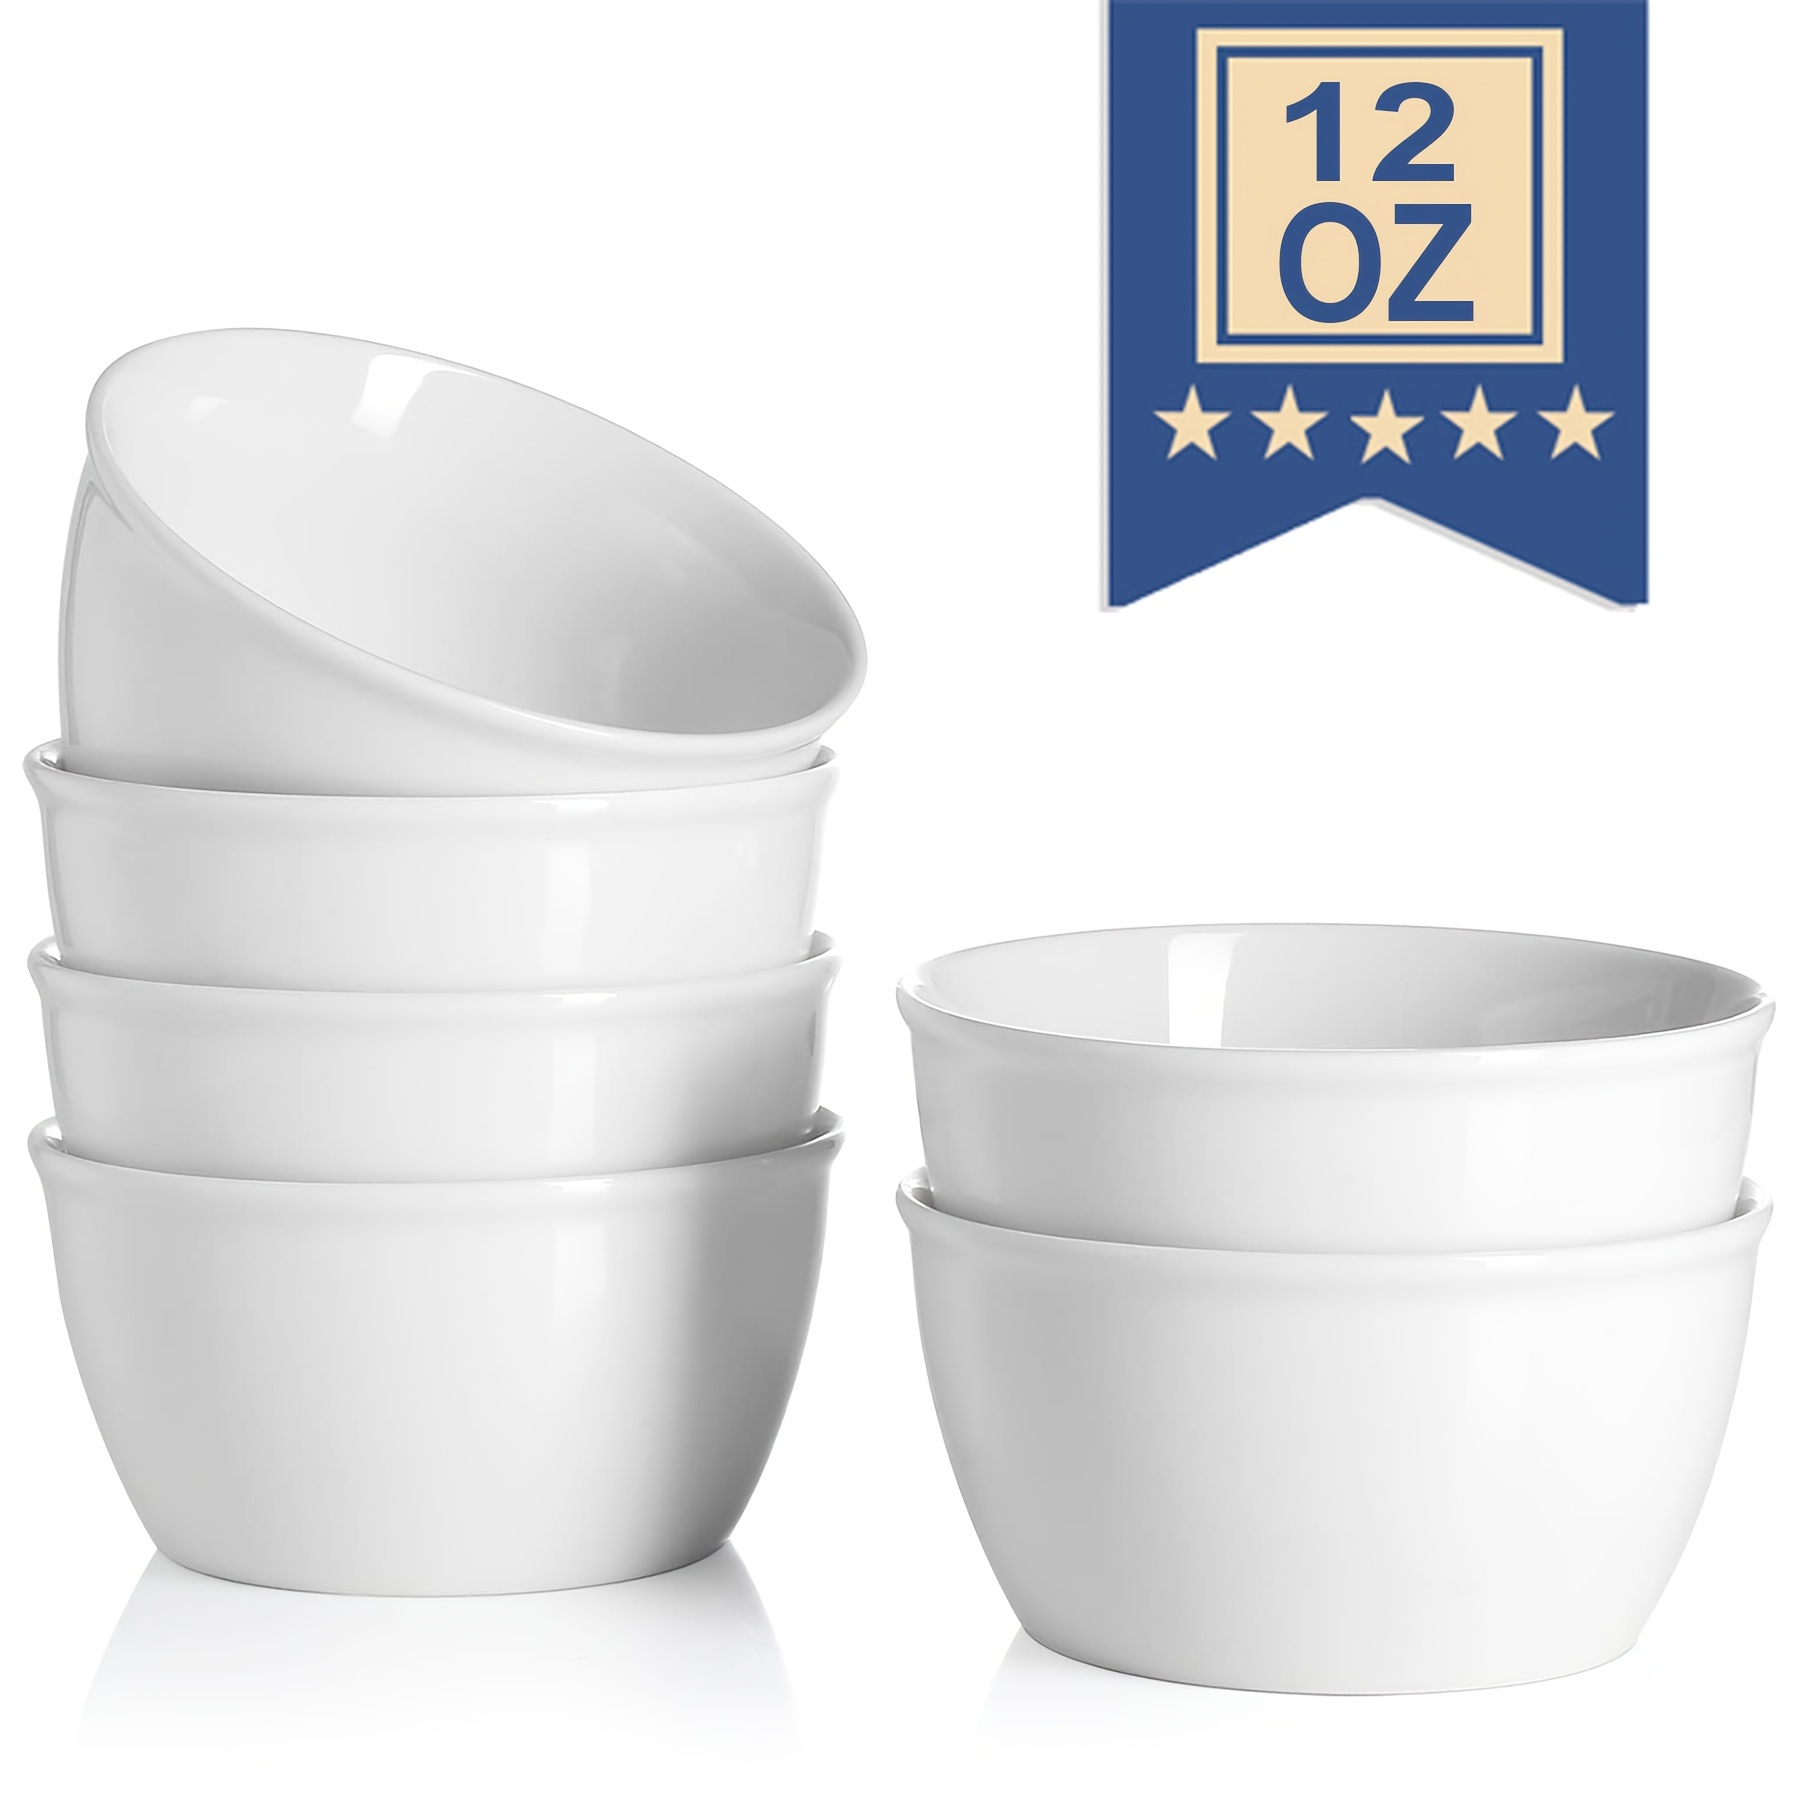 Samsle Porcelain Cereal Bowls, 16 oz Square Serving Bowls Set, 5 Inch White  Ceramic Bowls for Salad, Soup, Snack, Dessert and Marmalade, Dishwasher 